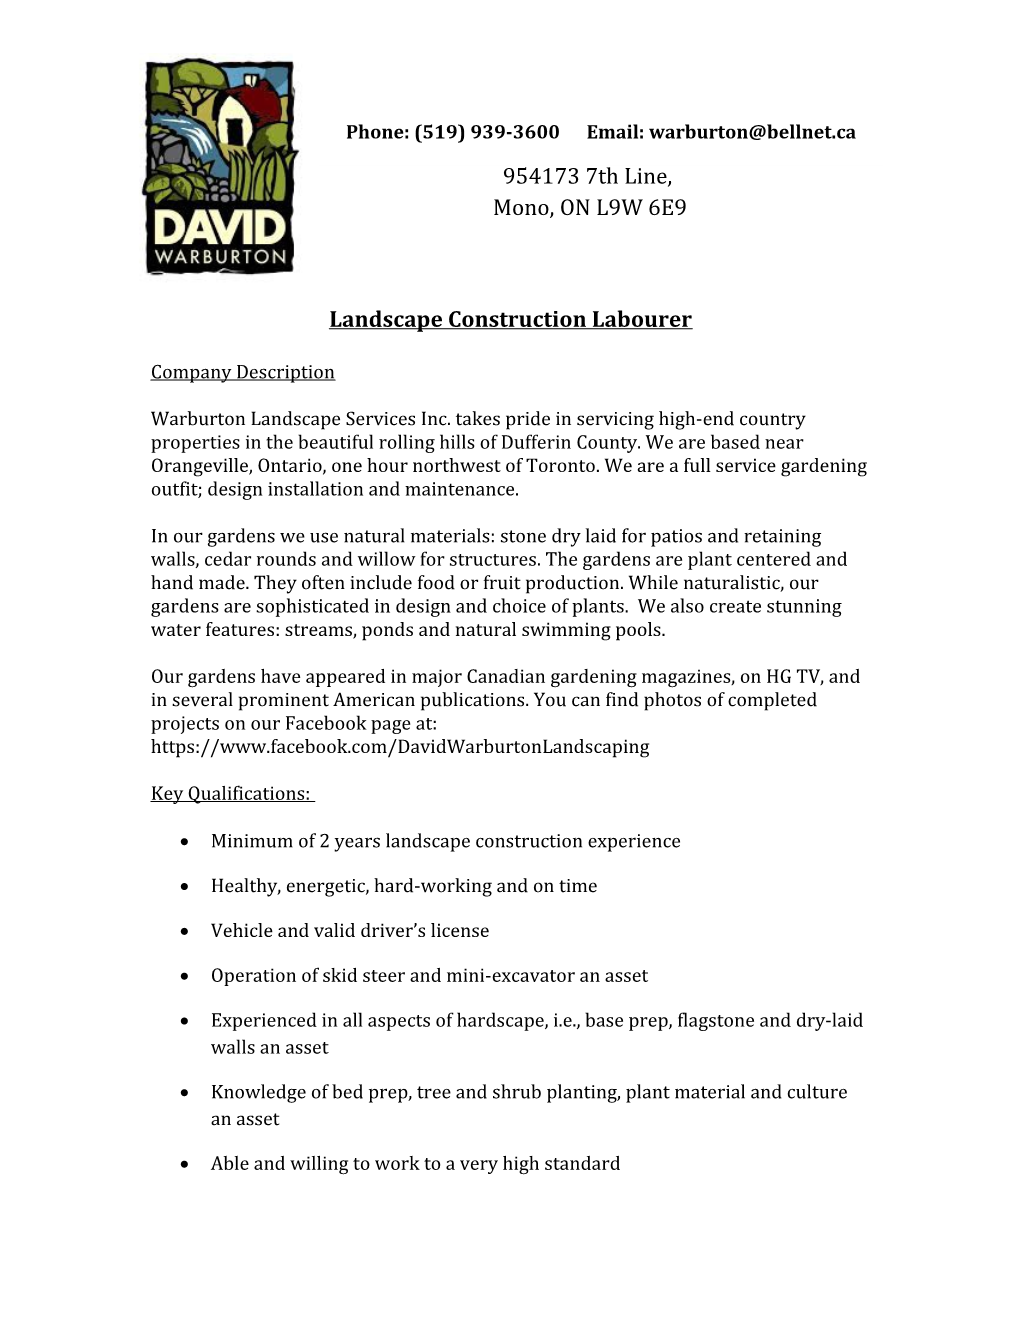 Landscape Construction Labourer